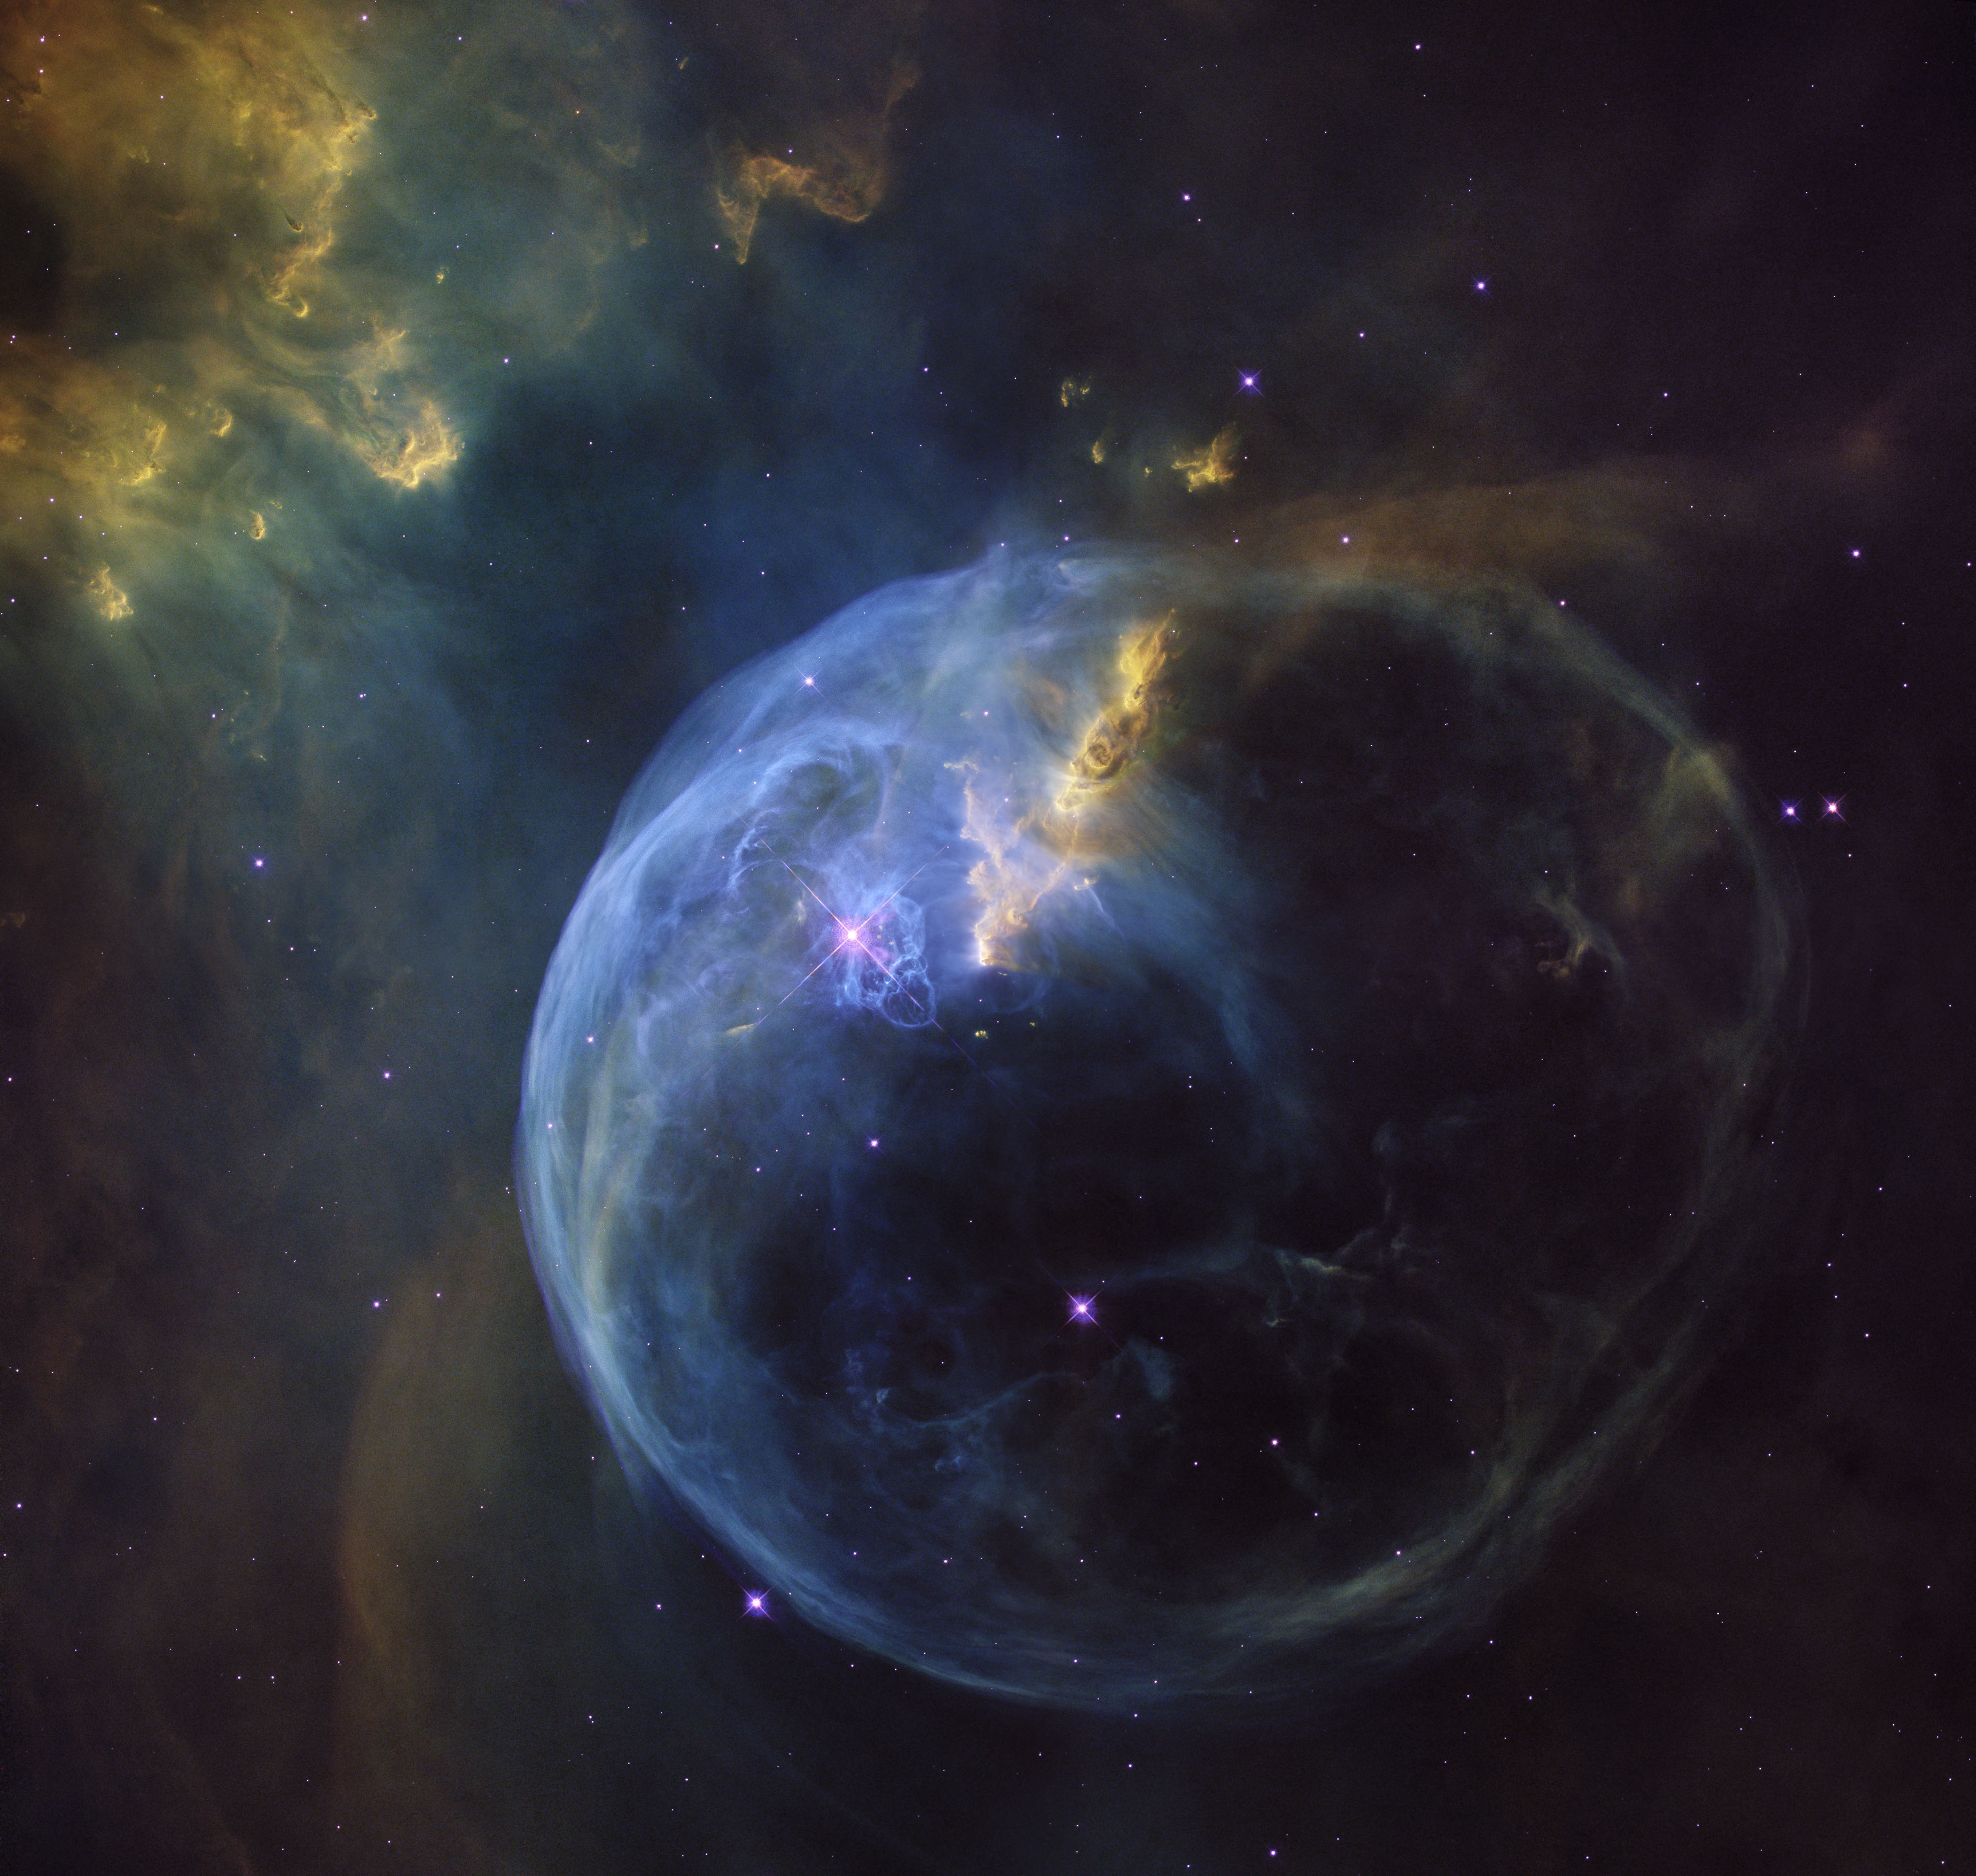 气泡星云,又名ngc7653,位于仙后座中,距离地球8000光年